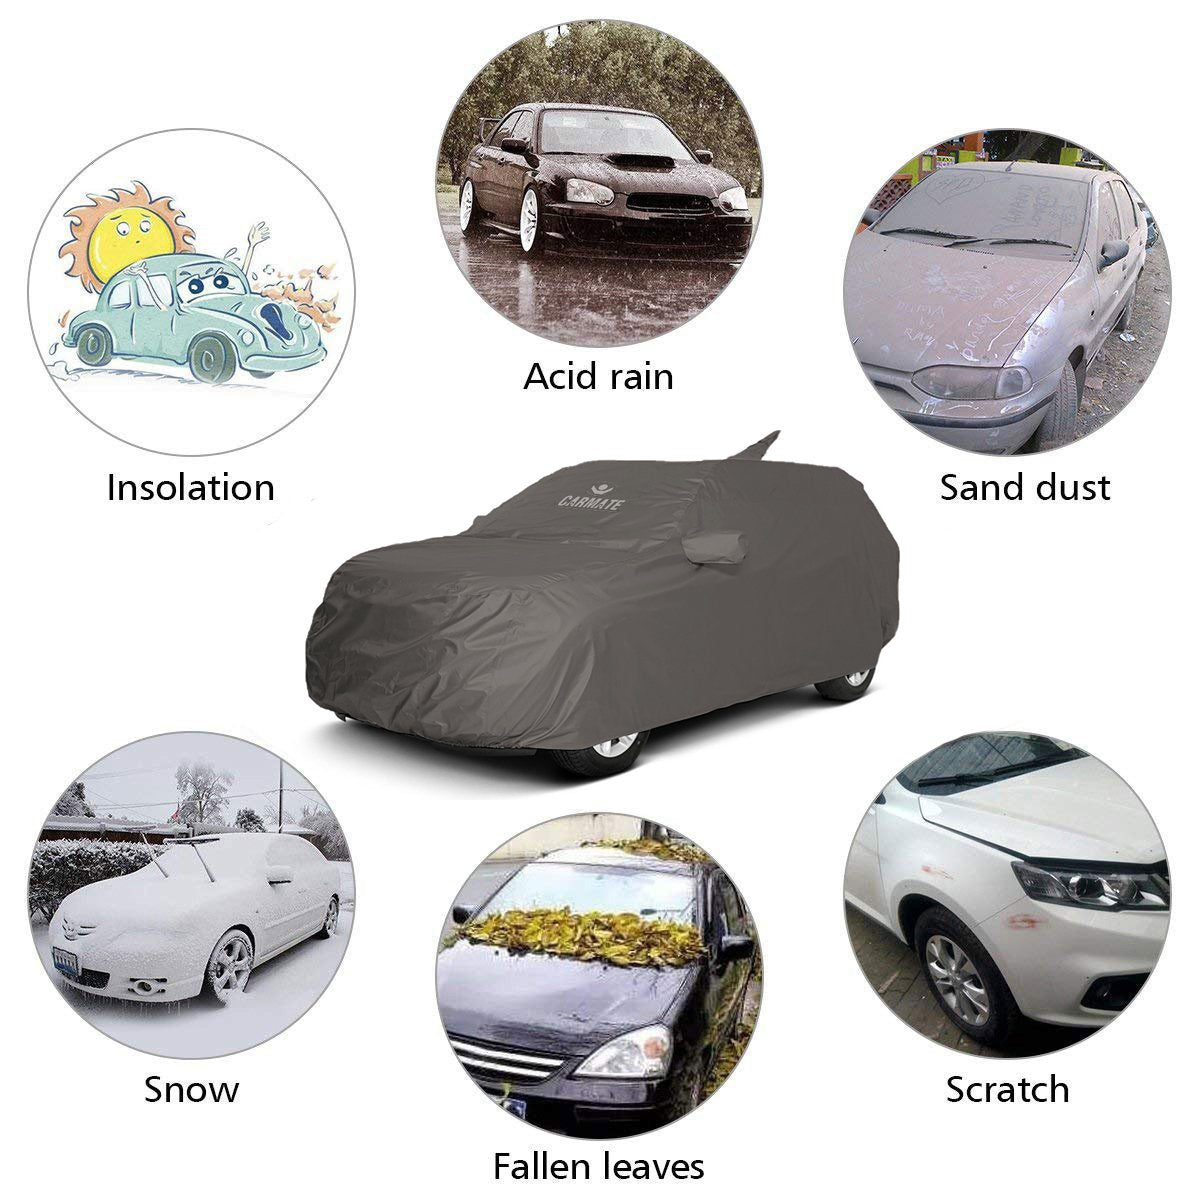 Carmate Car Body Cover 100% Waterproof Pride (Grey) for Renault - Duster - CARMATE®